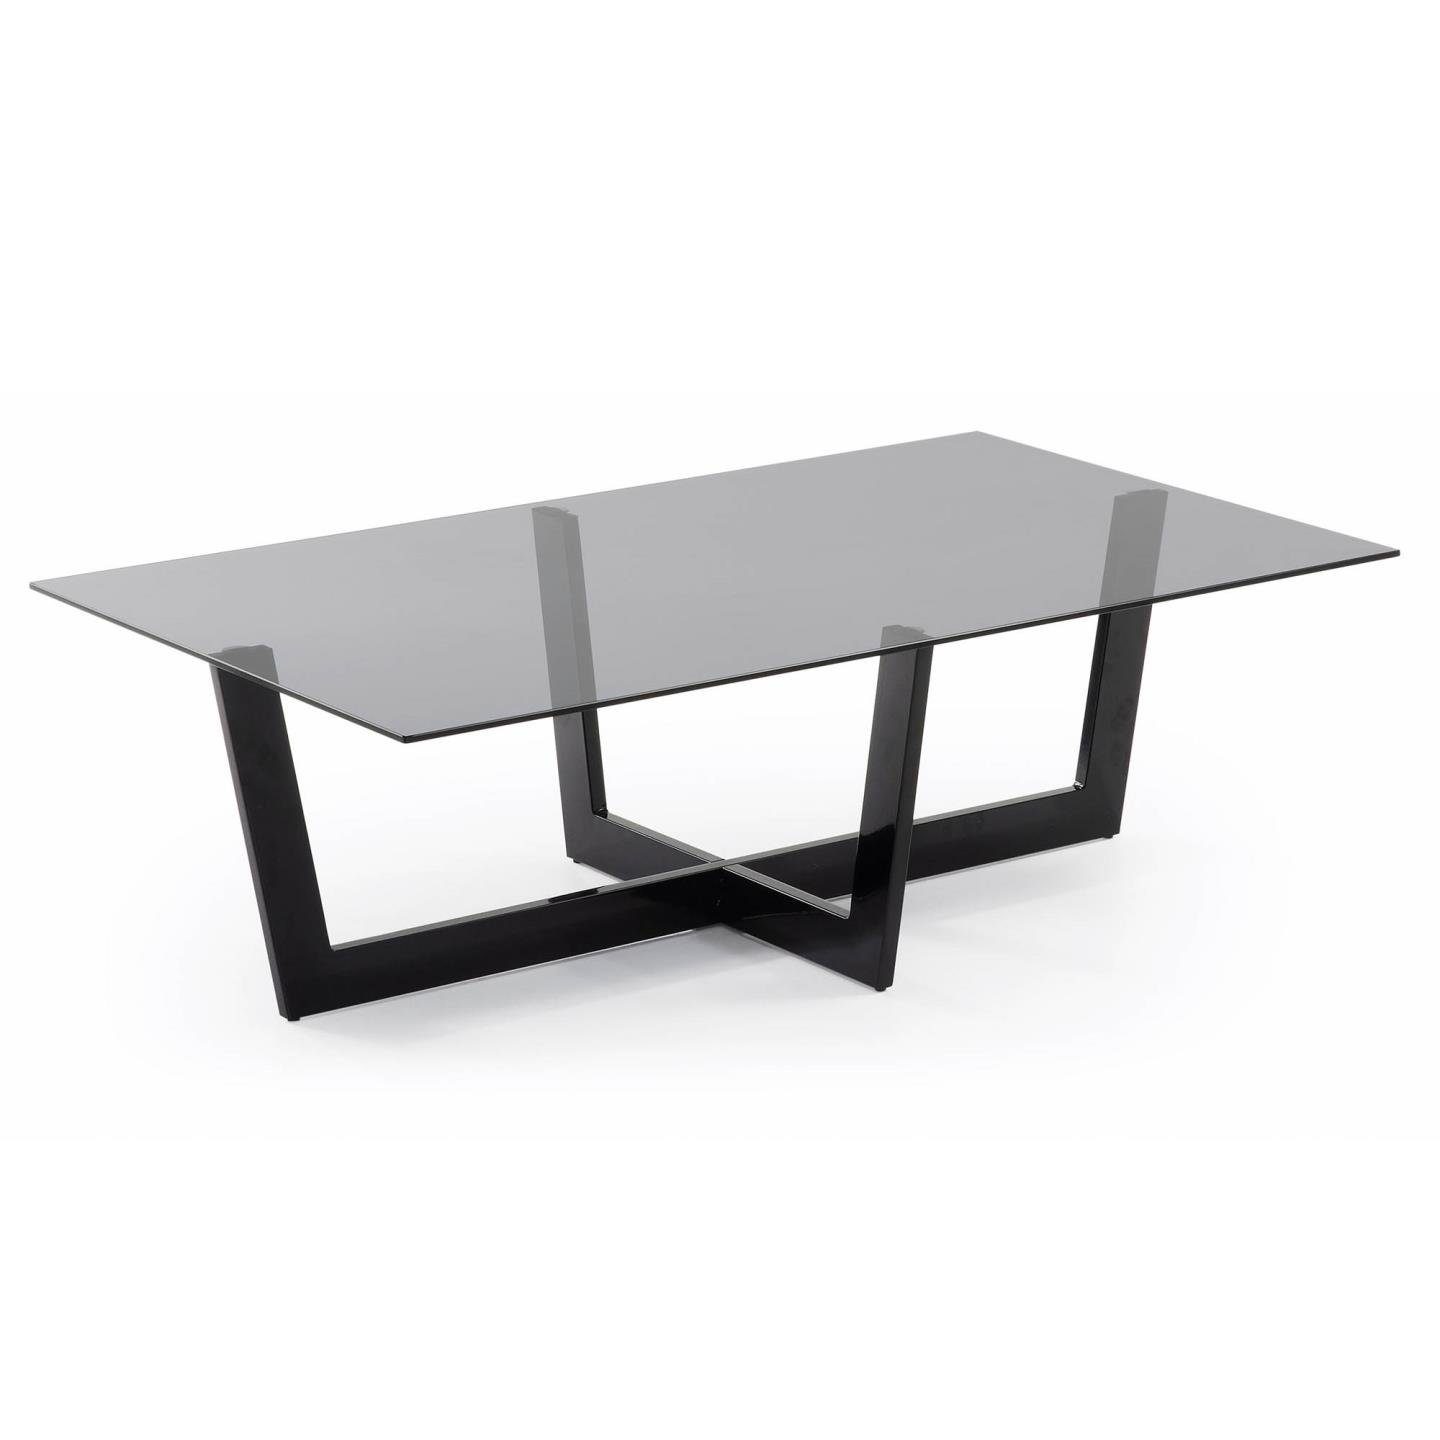 schwarz Natur24 Plam Couchtisch 120x70cm Stahlstruktur Beistelltisch Glas Tisch